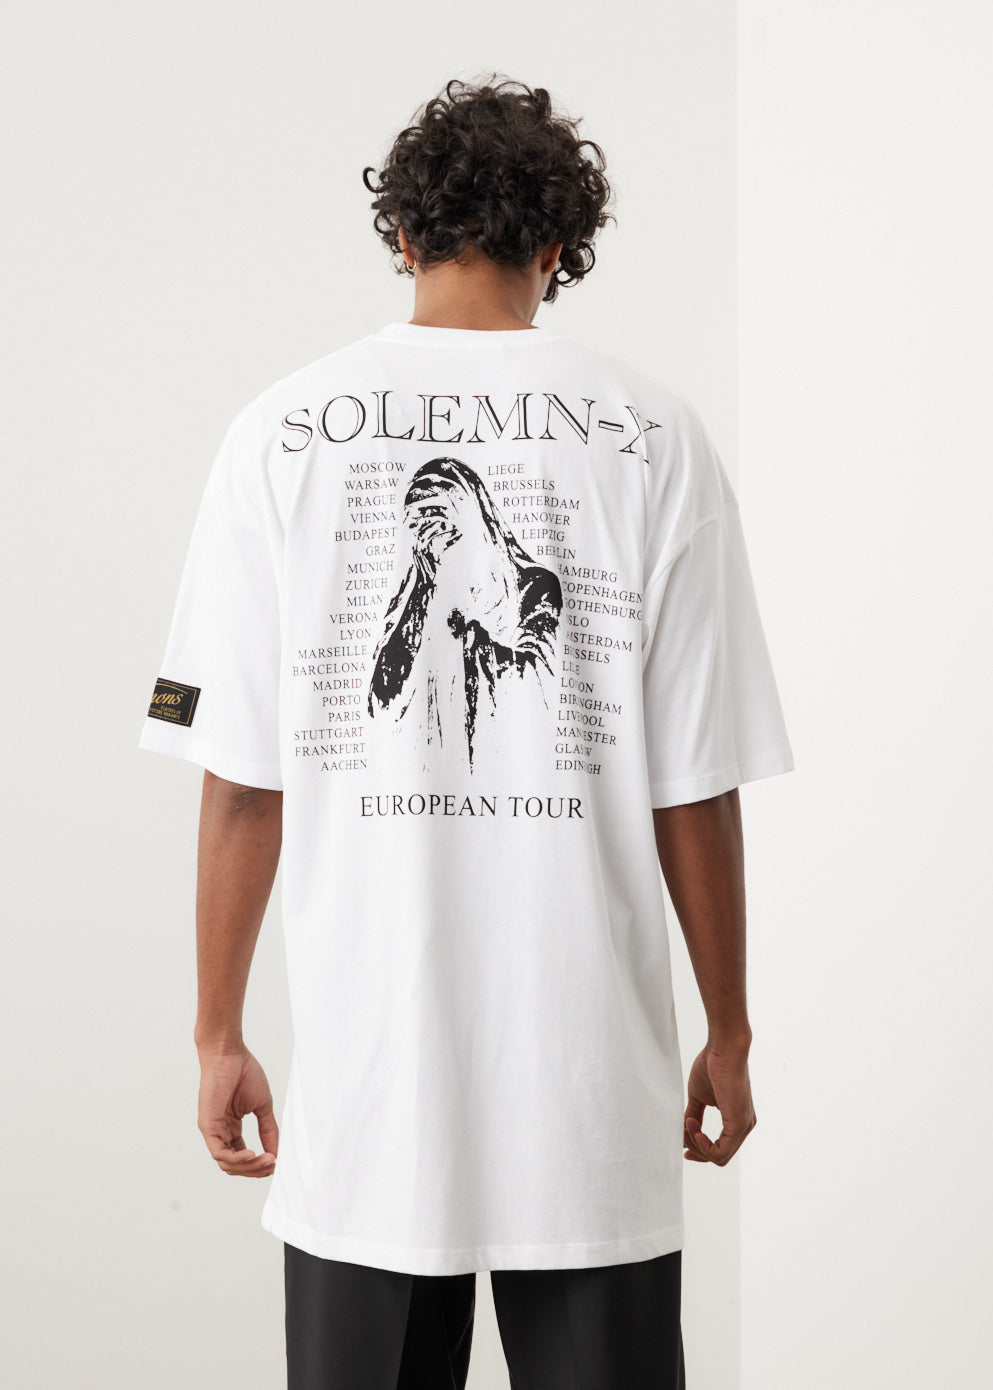 Solemn-X Oversized T-shirt